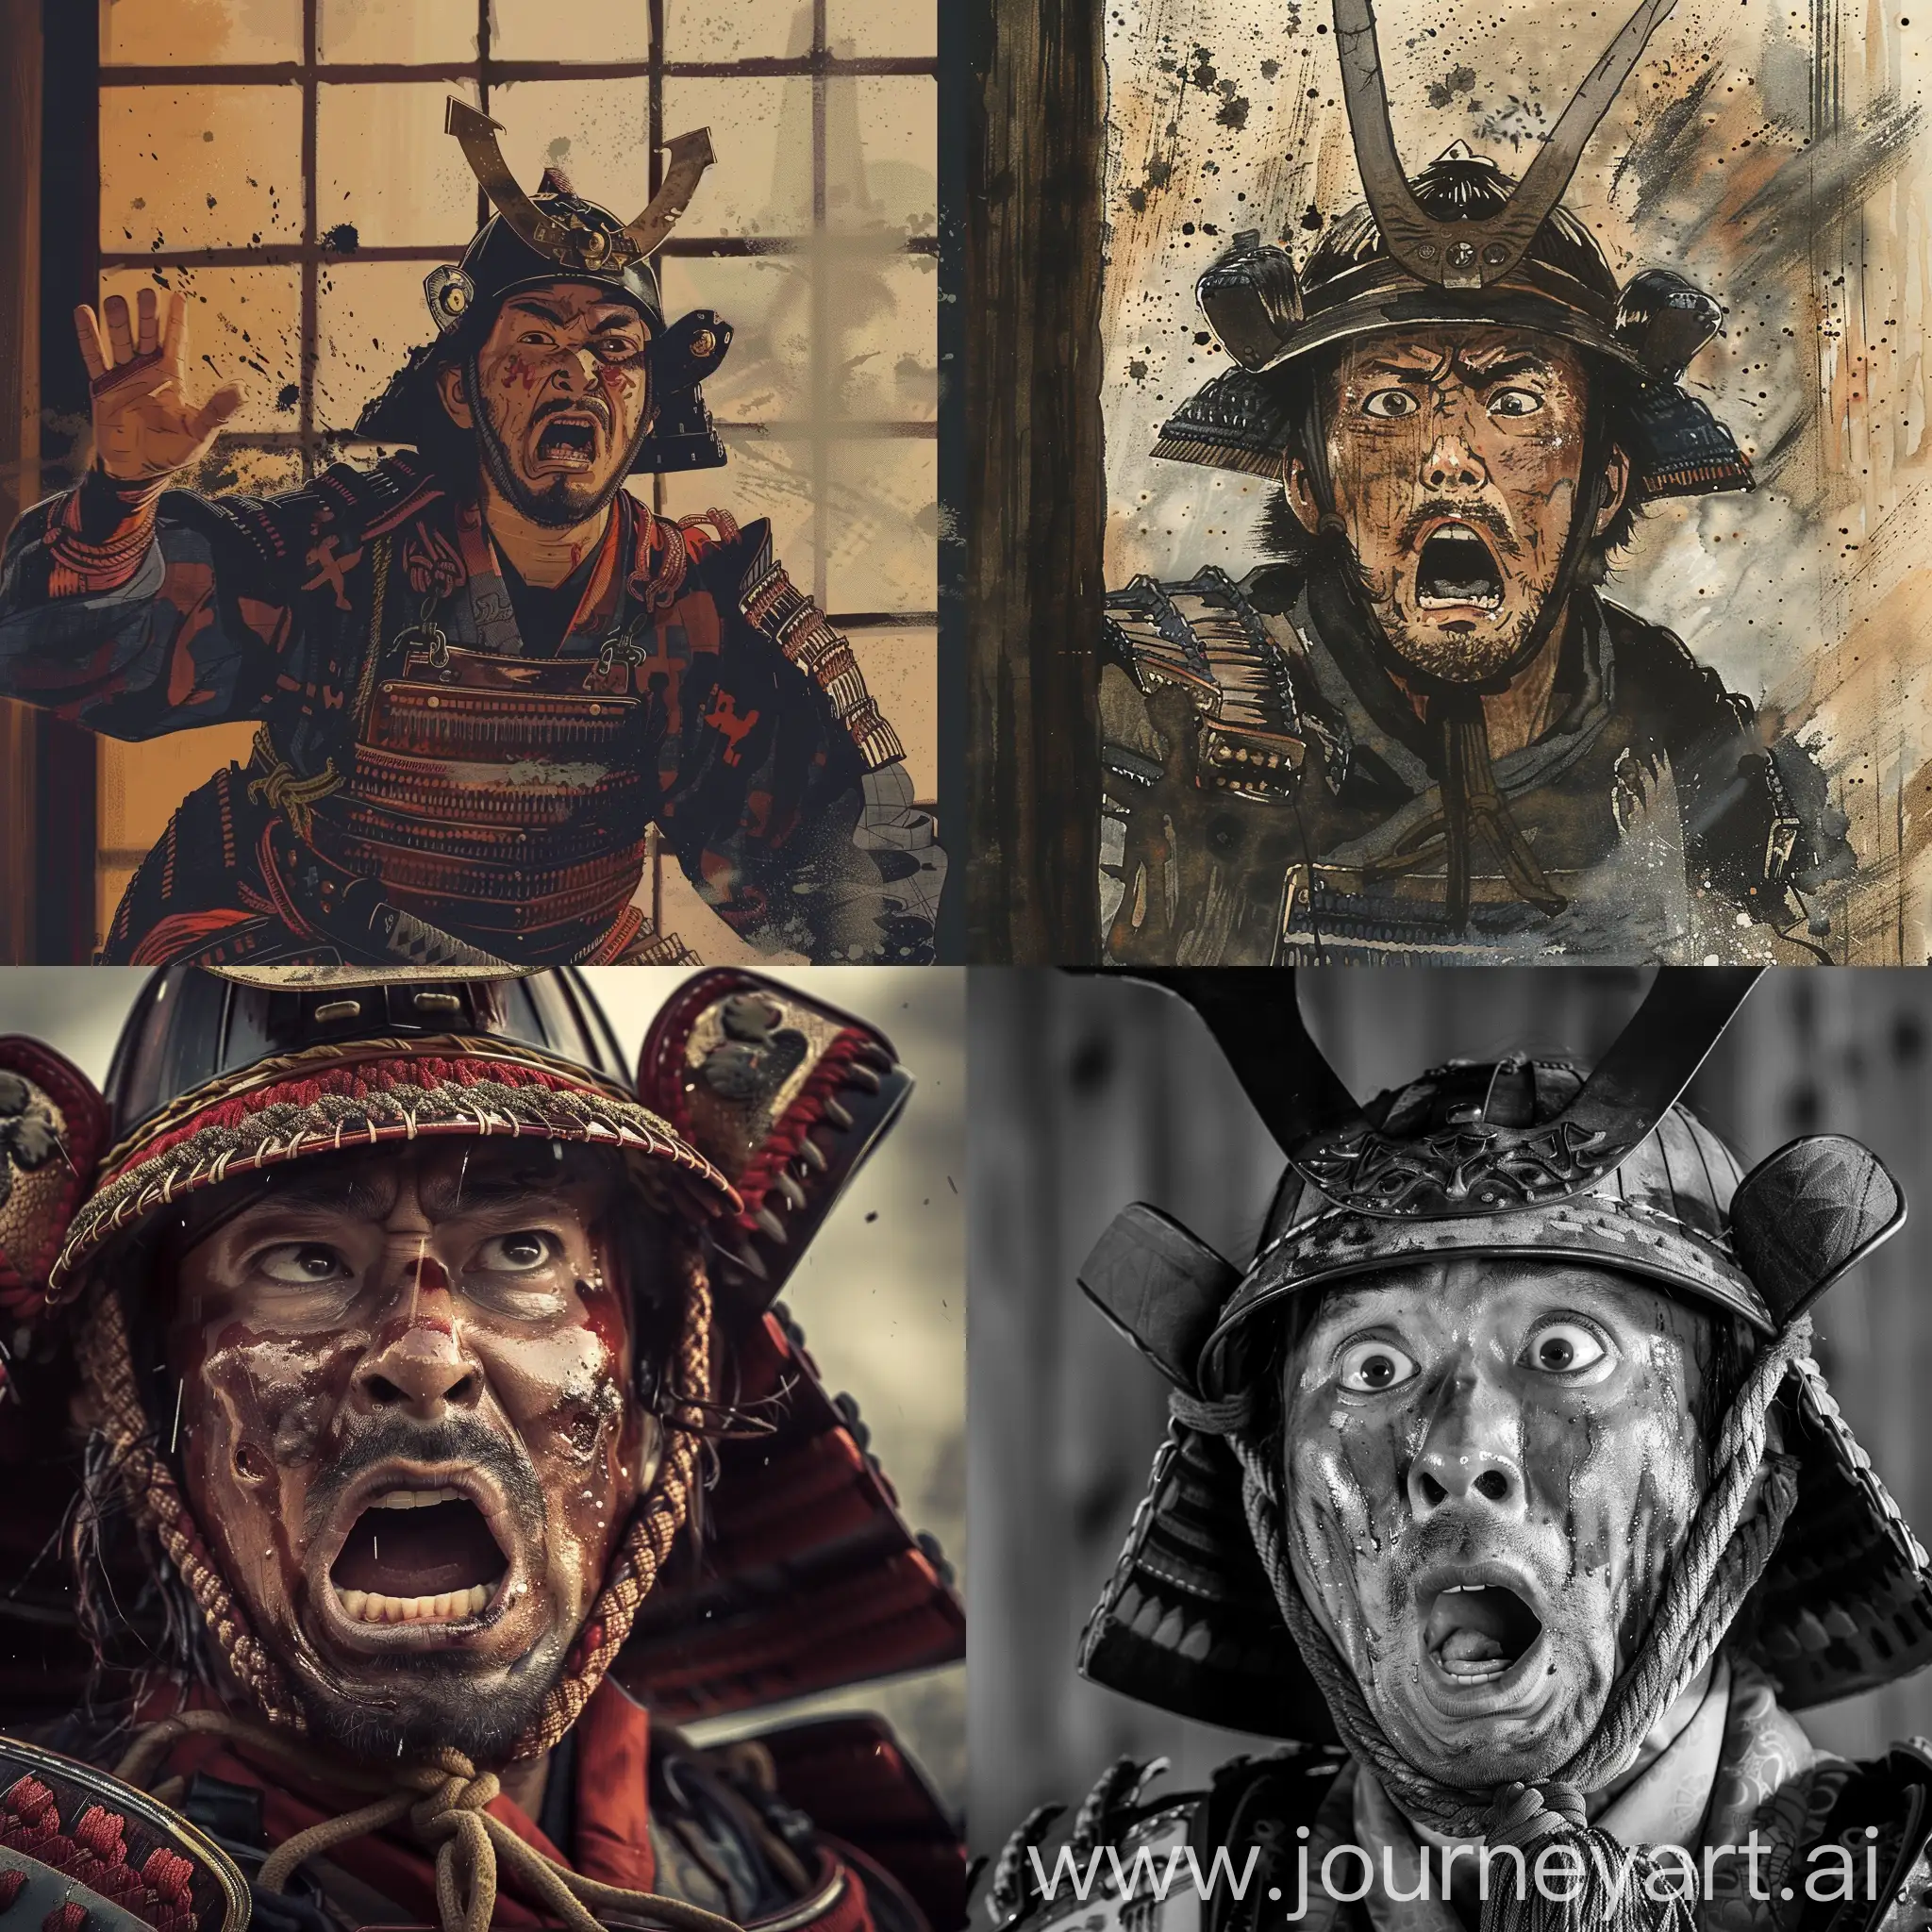 Frightened-Samurai-Warrior-Facing-Unknown-Danger